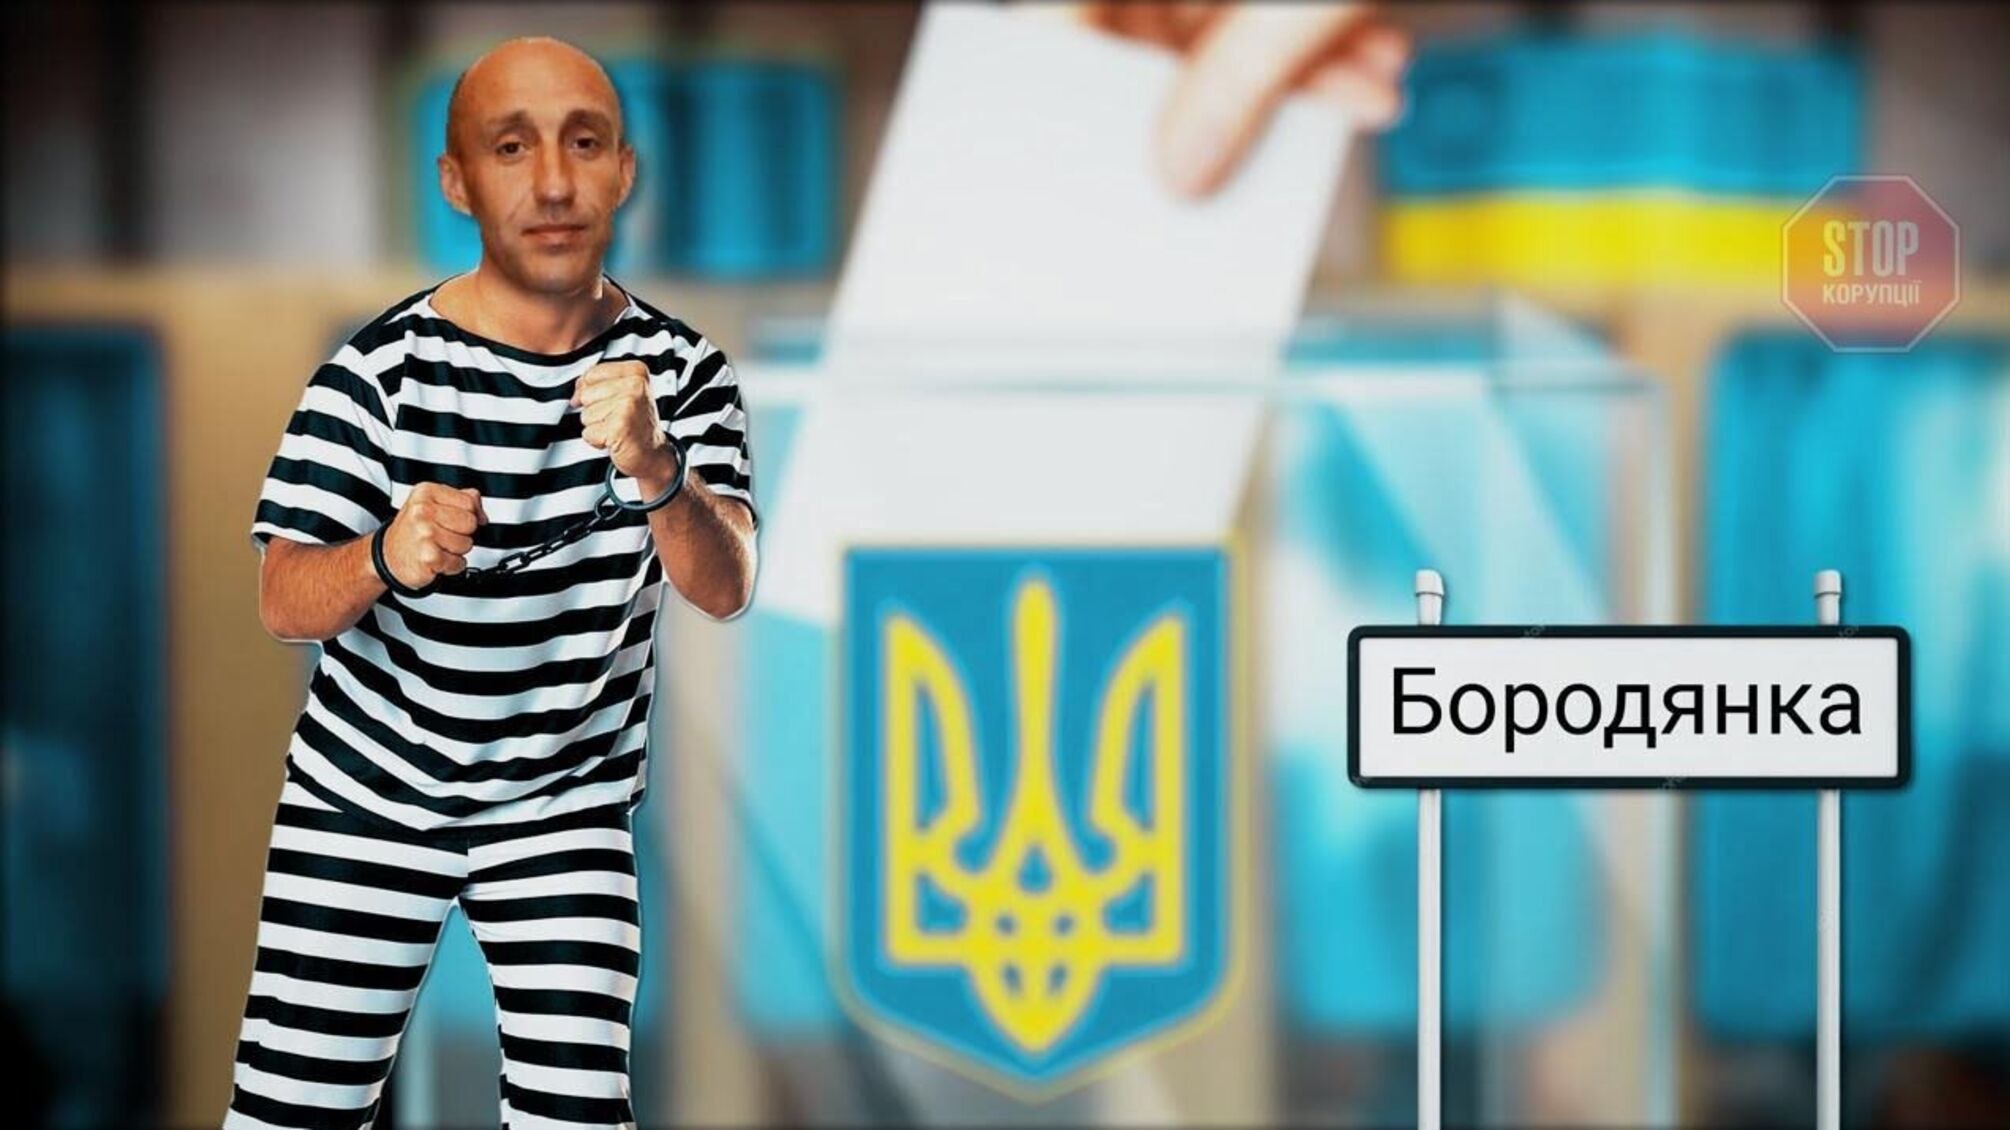 Нелегальний бізнес і розкрадання: ОТГ на Київщині може очолити фігурант 36 кримінальних проваджень